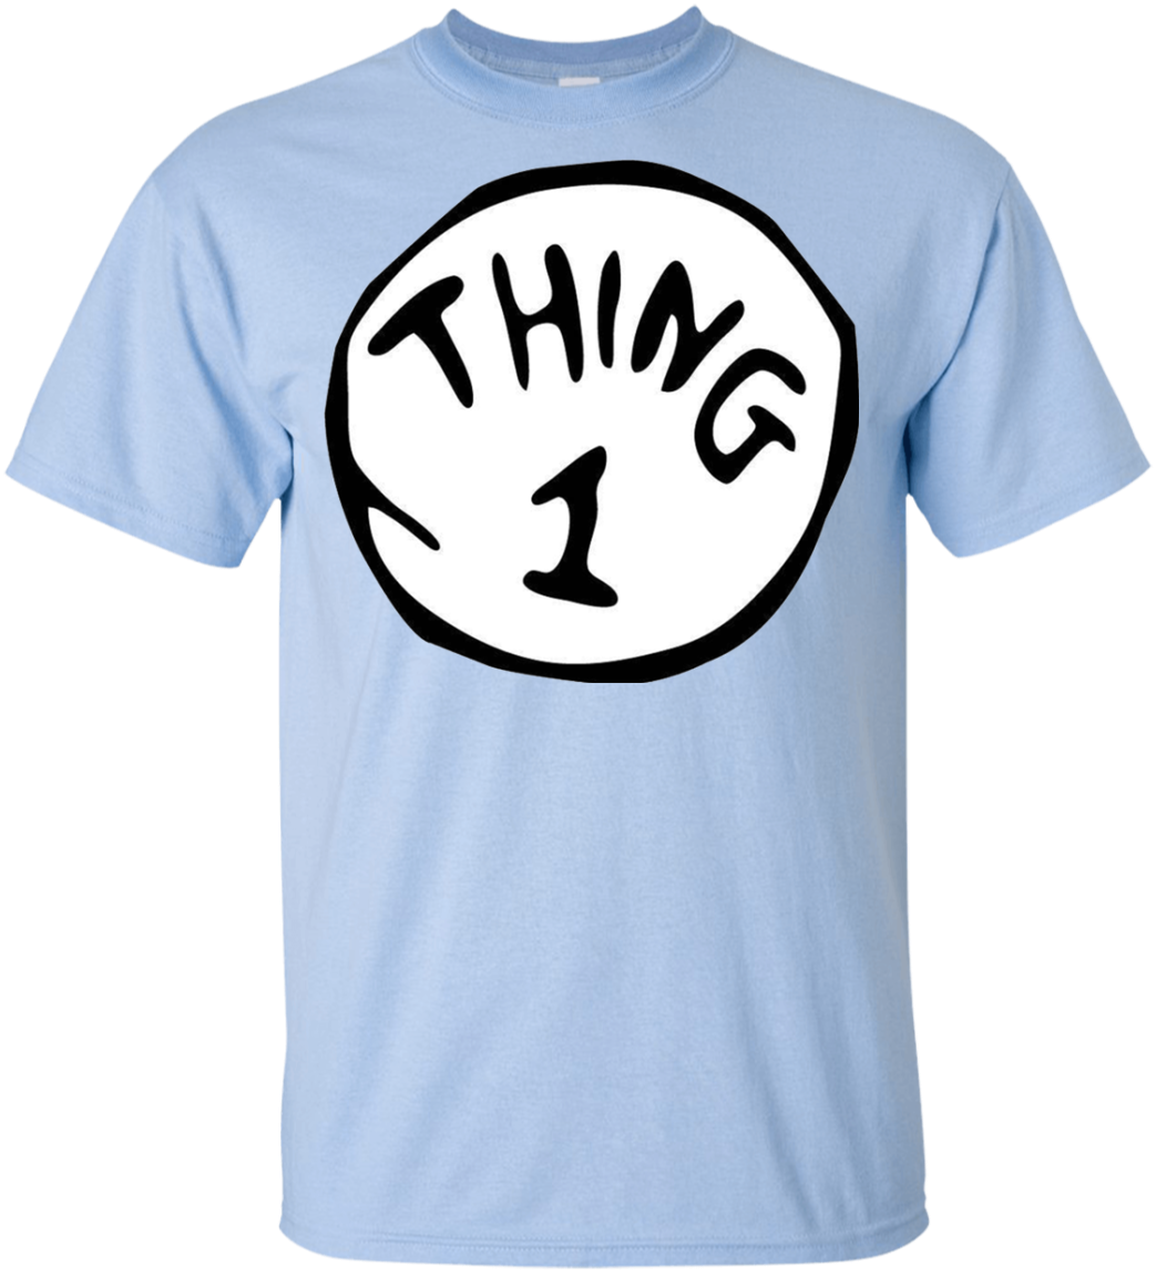 Thing1 Blue T Shirt PNG